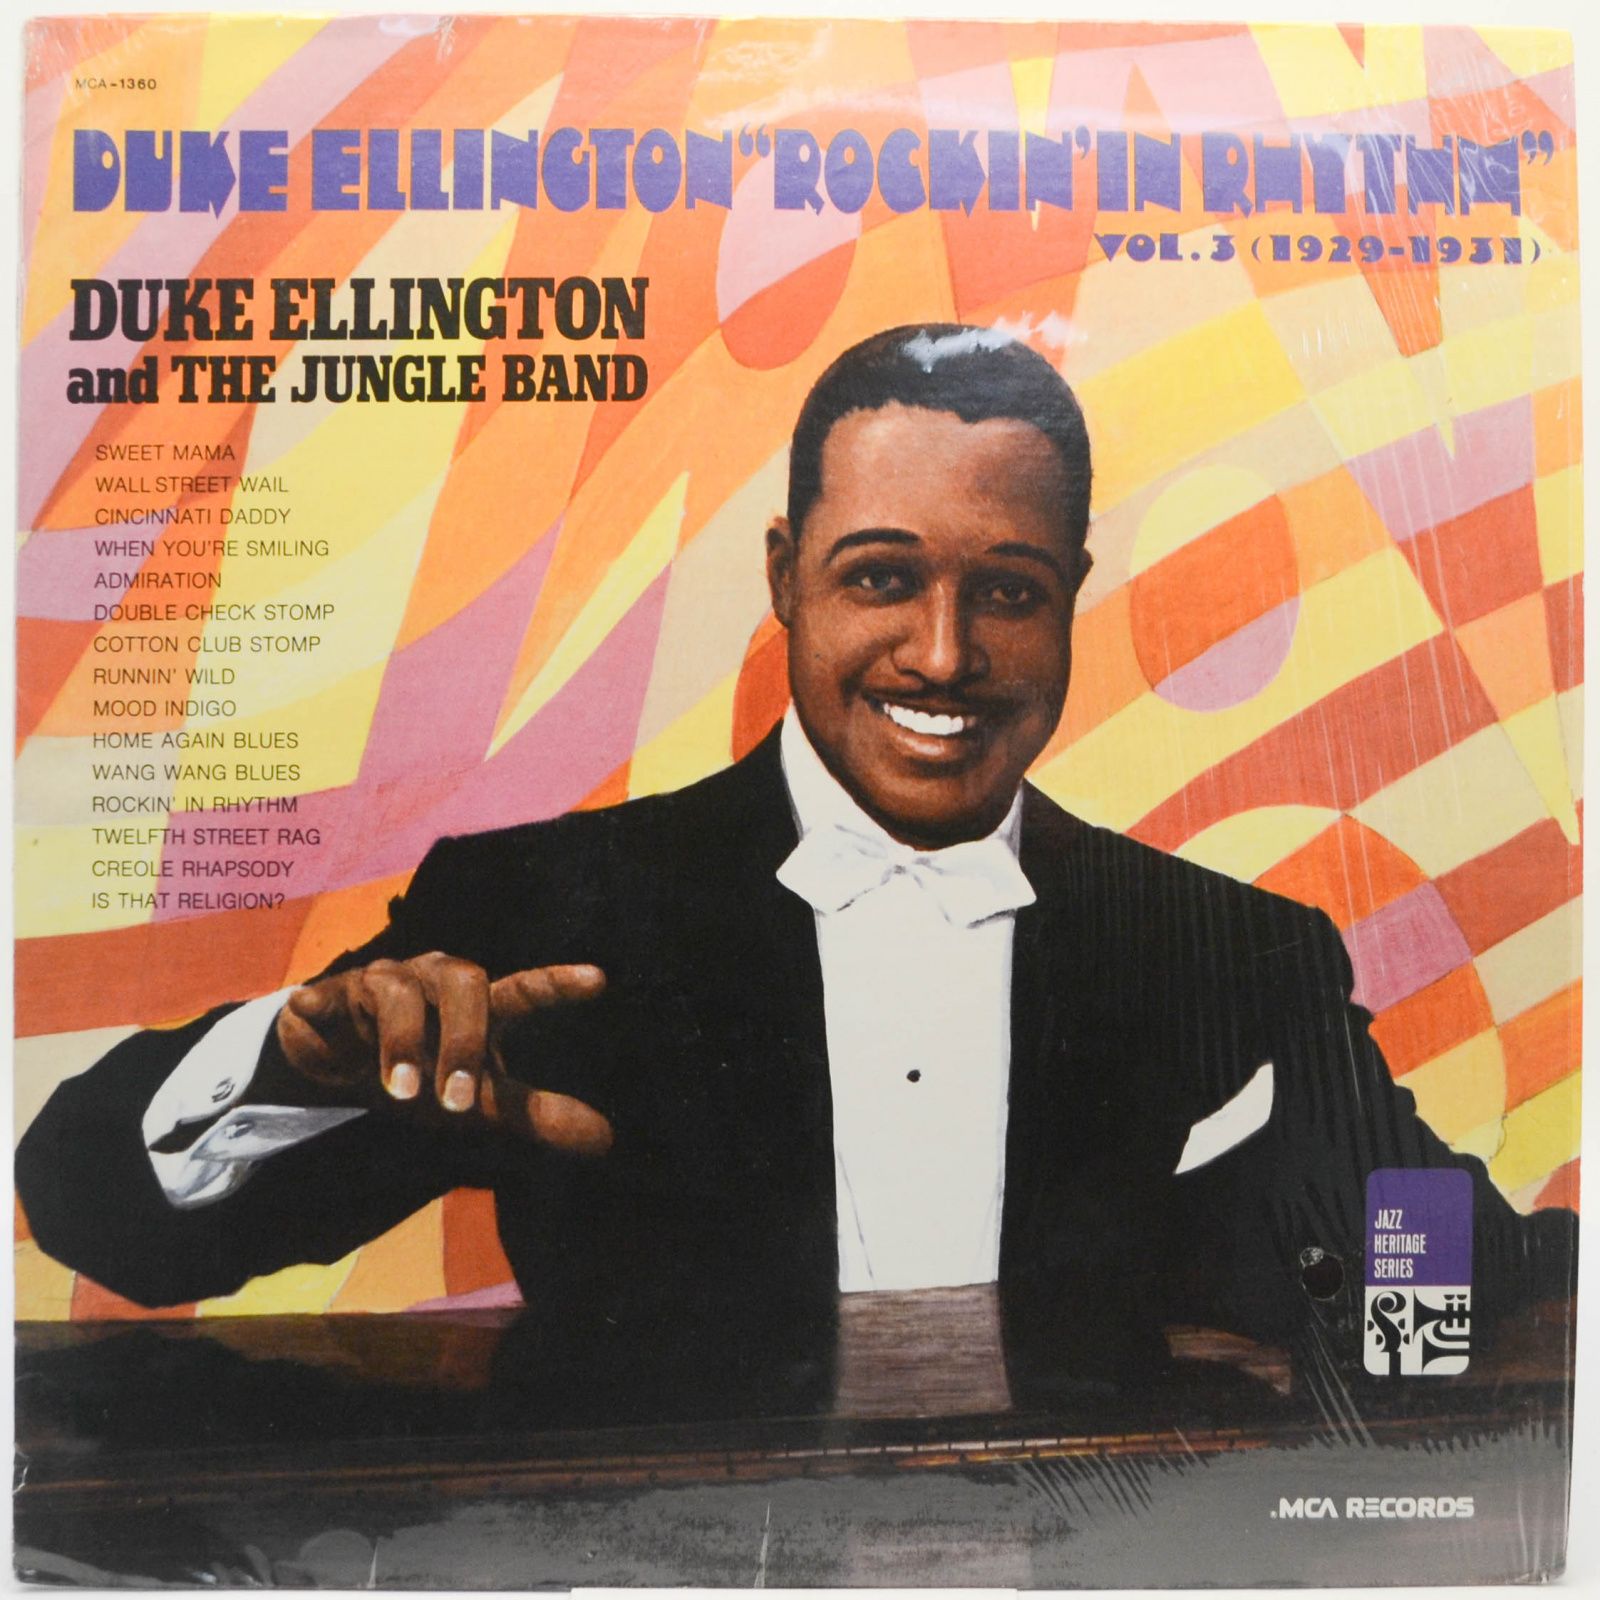 Duke Ellington "Rockin' In Rhythm" Vol. 3 (1929-1931) (USA), 1970